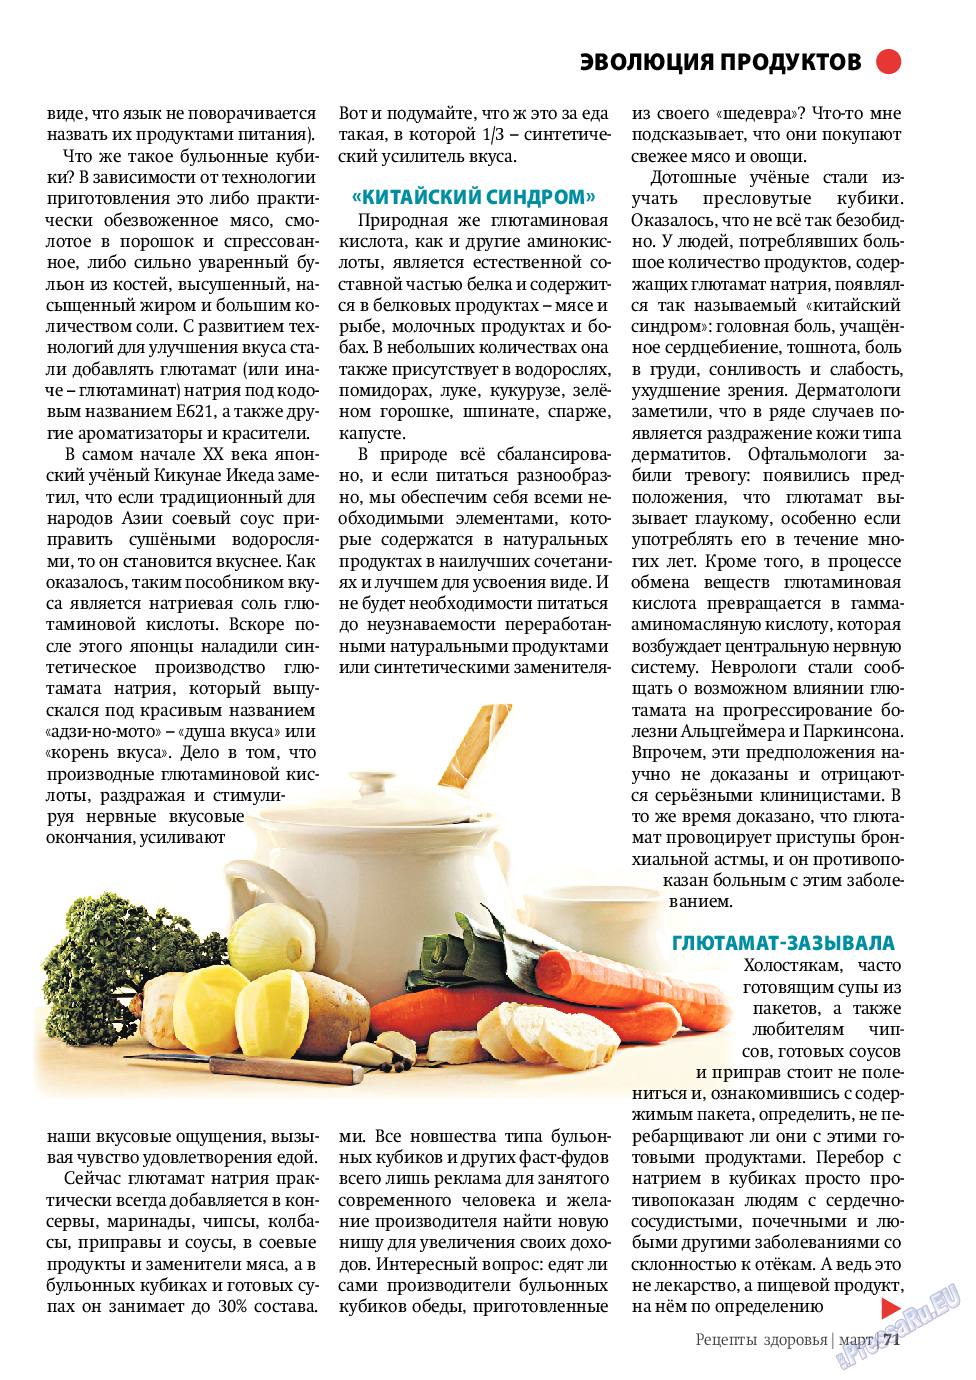 Рецепты здоровья, журнал. 2011 №3 стр.71